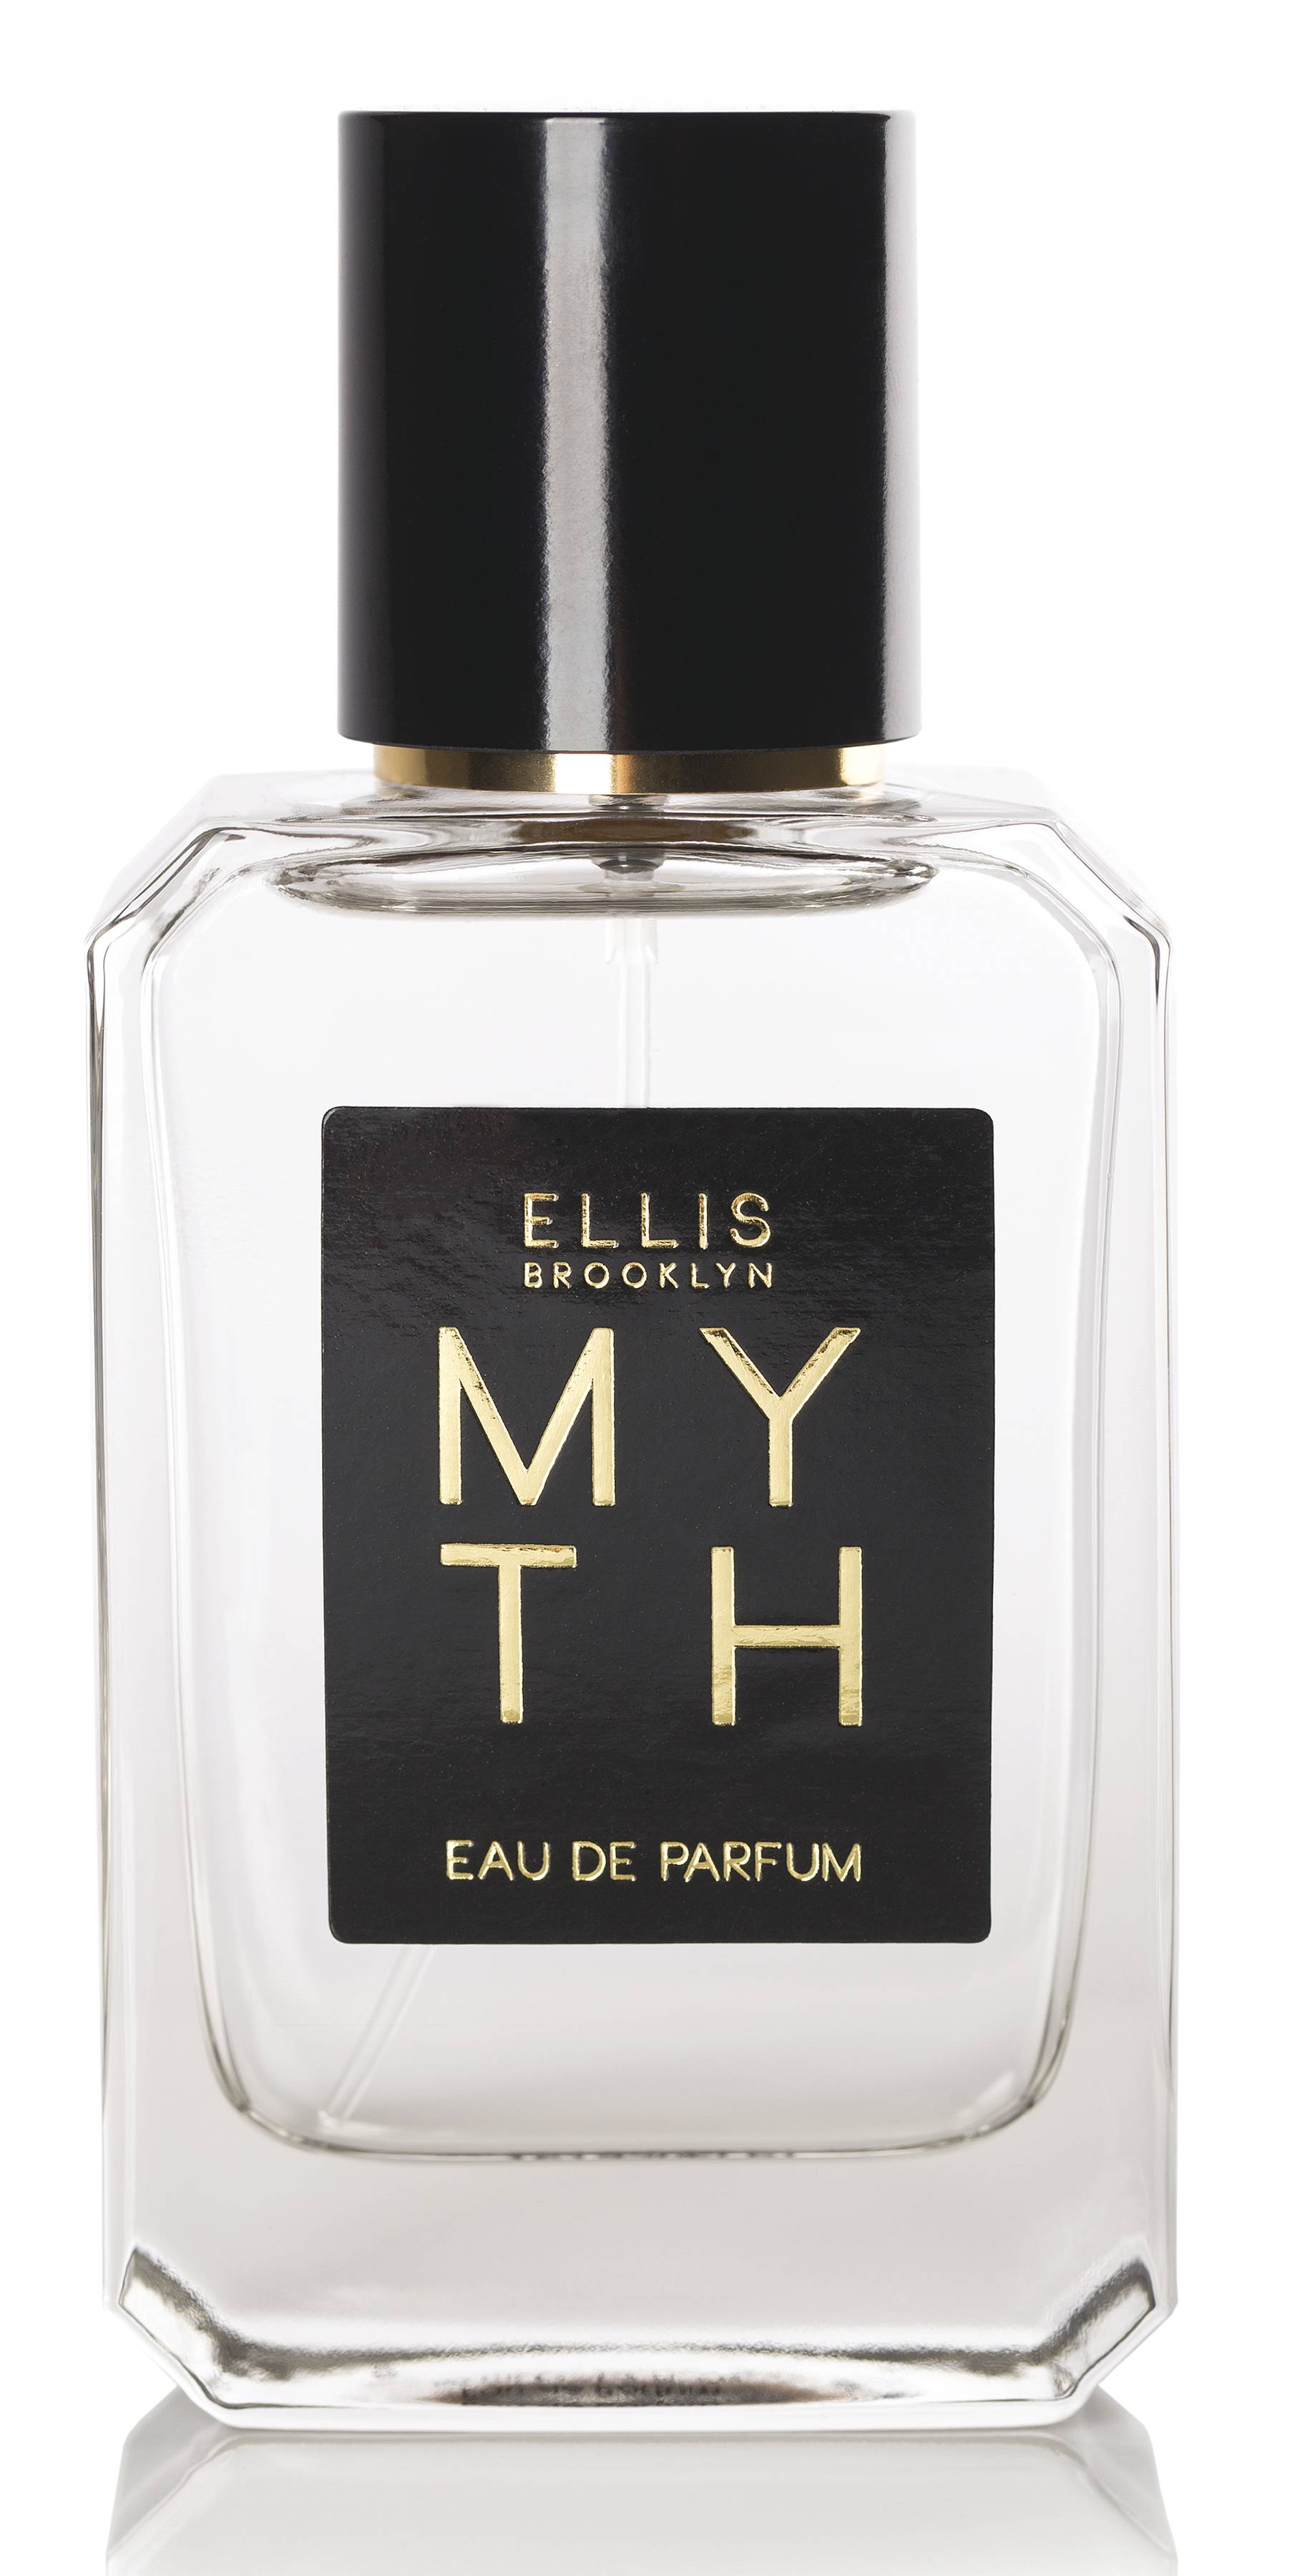 Ellis Brooklyn Myth eau de parfum